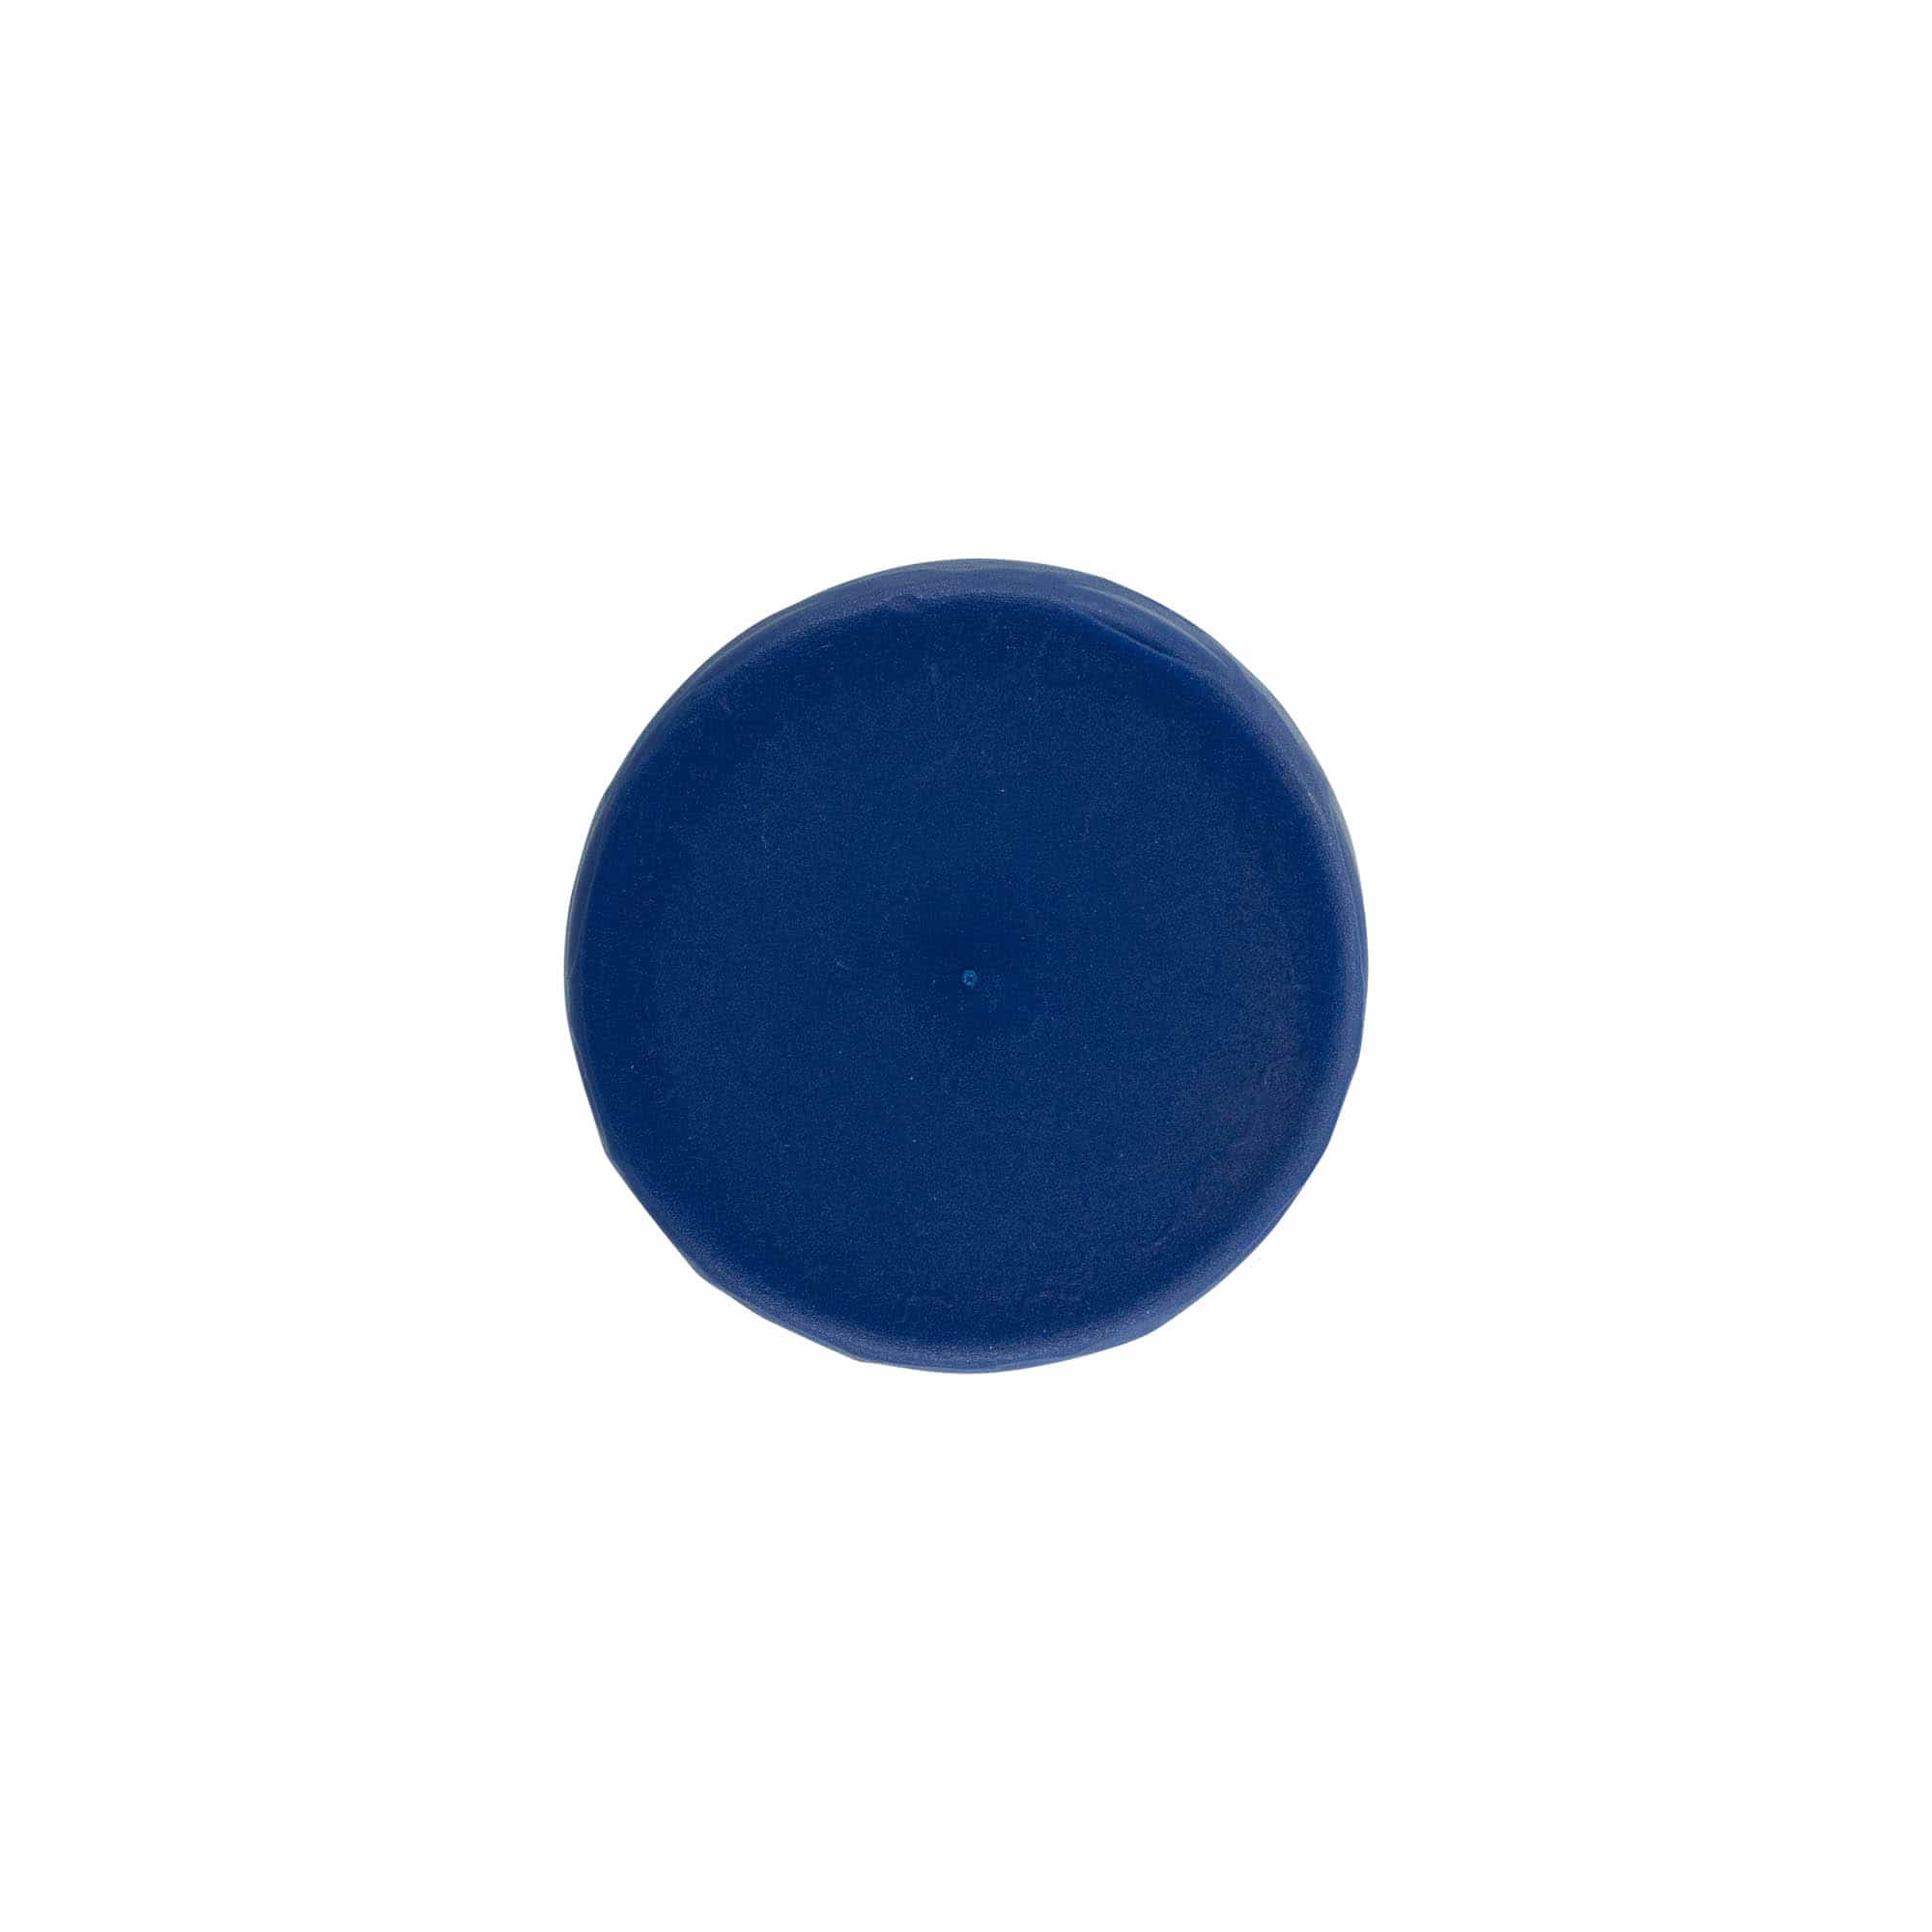 Stülpdeckel für Enghals-Keramiktopf, HDPE-Kunststoff, blau